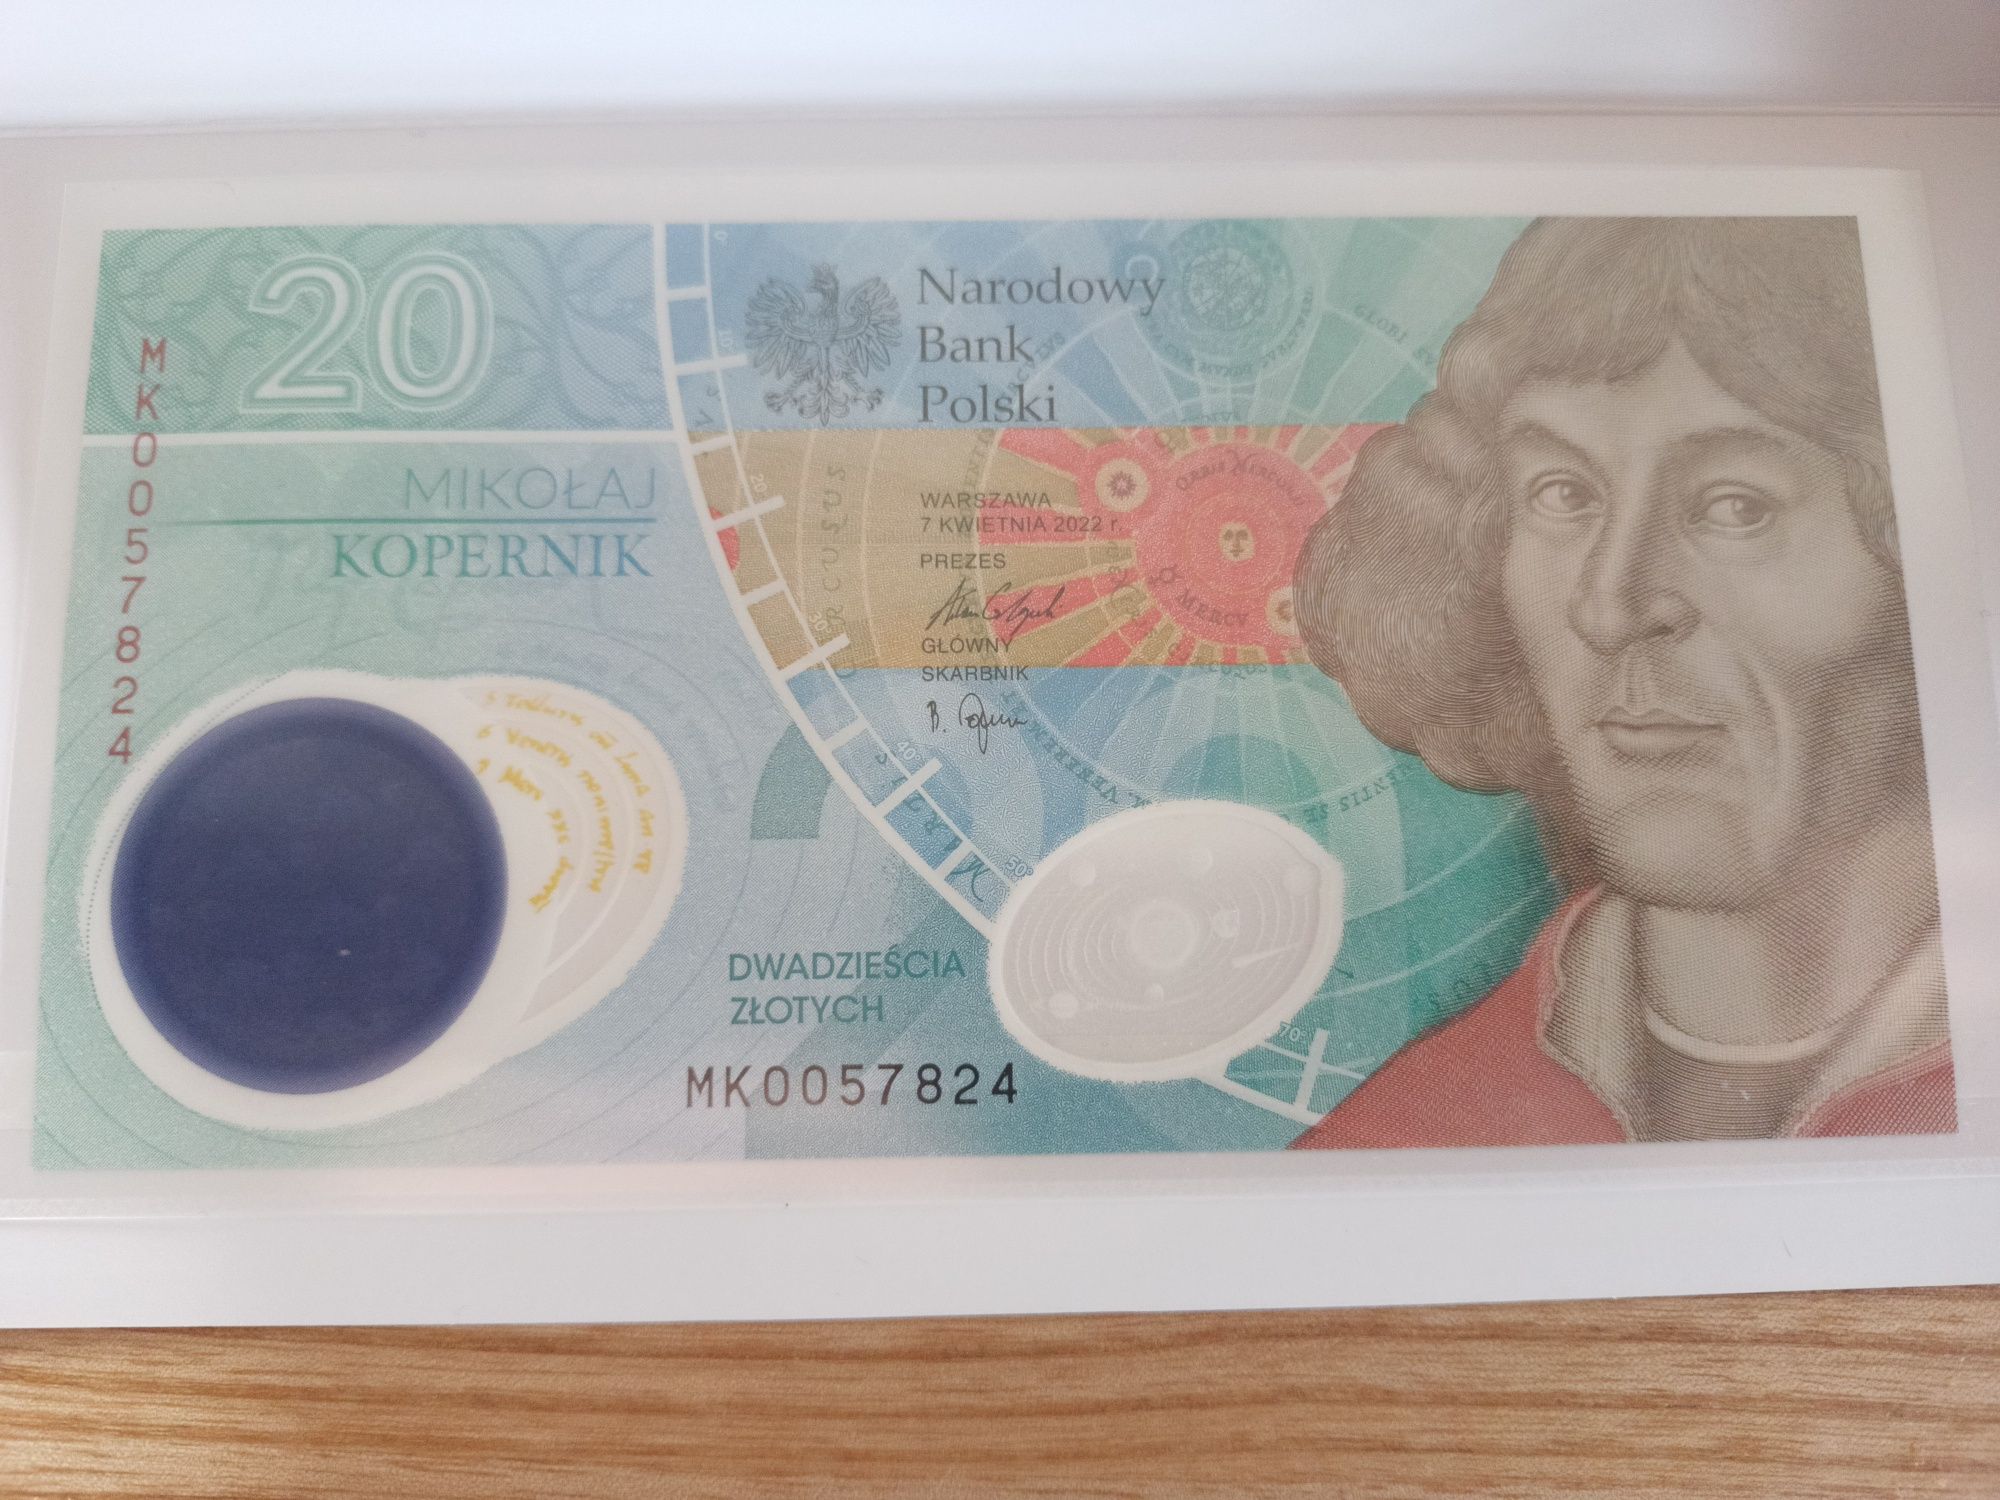 Moneta 50zł z banknotem 20zł Mikołaj Kopernik